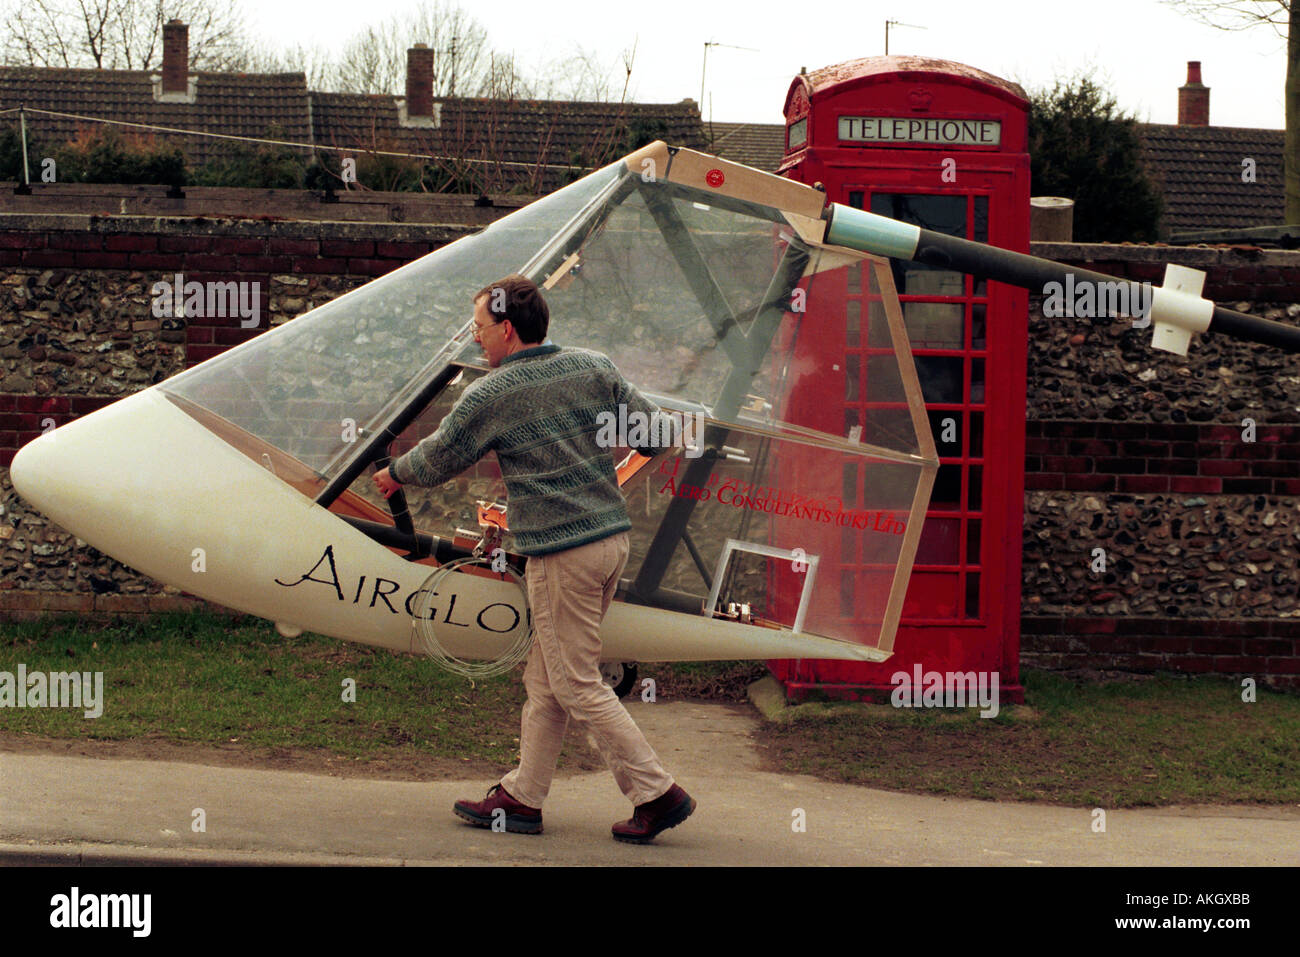 John McIntyre with his human powered aircraft at Balsham, Cambs., UK Stock Photo